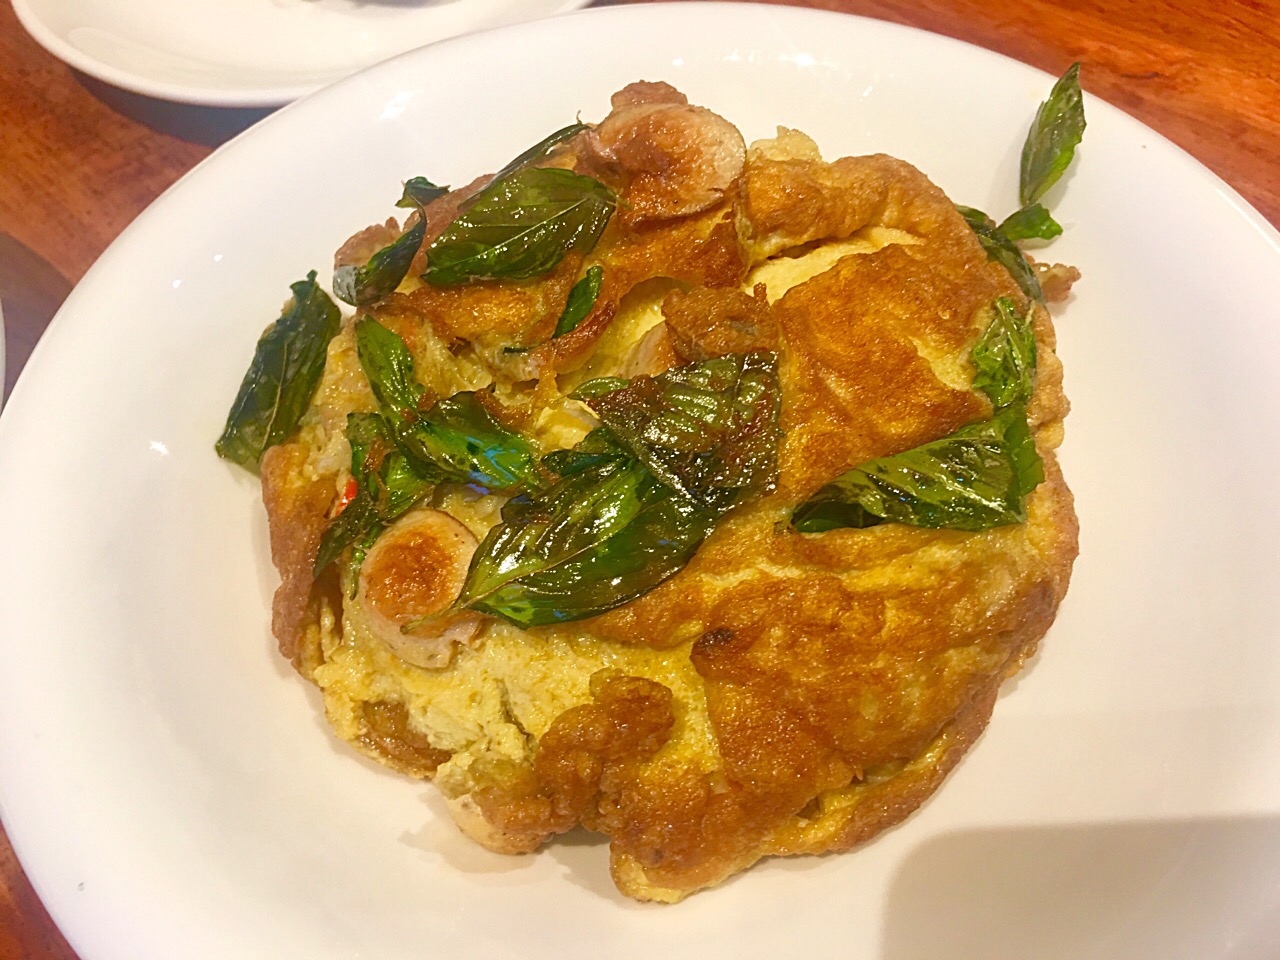 ข้าวไข่เจียว
Thai omlette